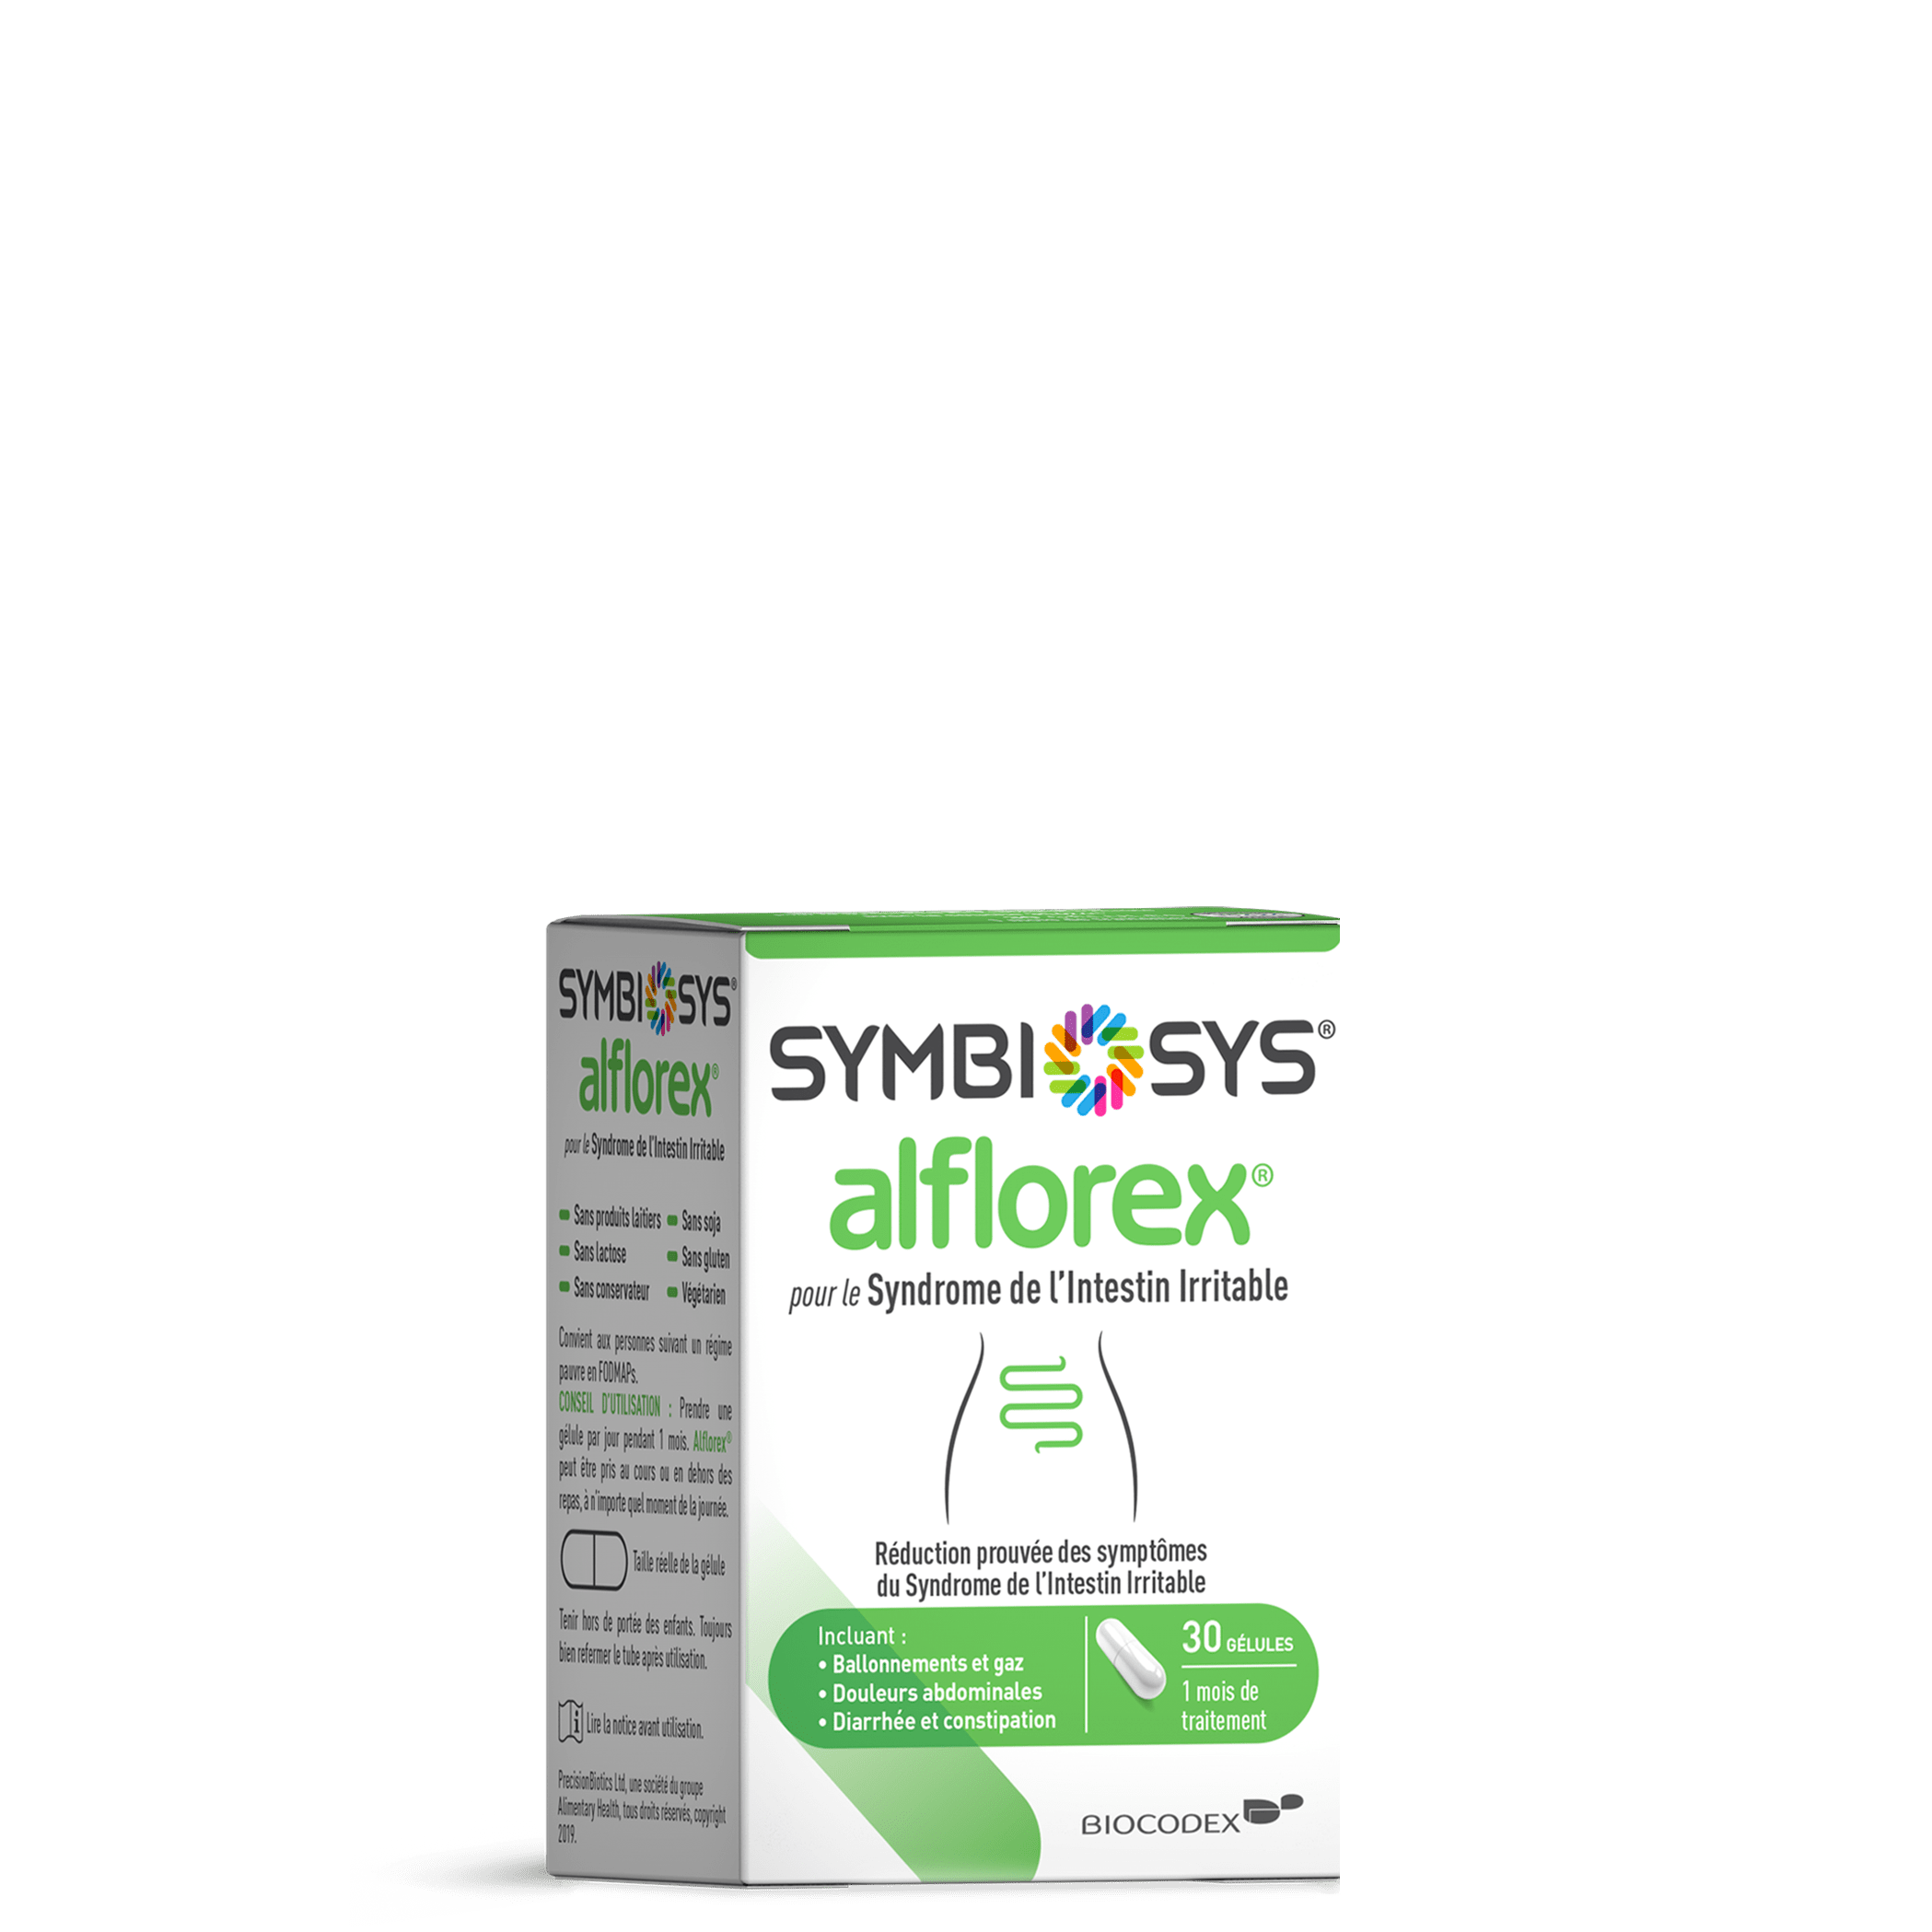 alflorex® pour le Syndrome de l'Intestin Irritable, , medium